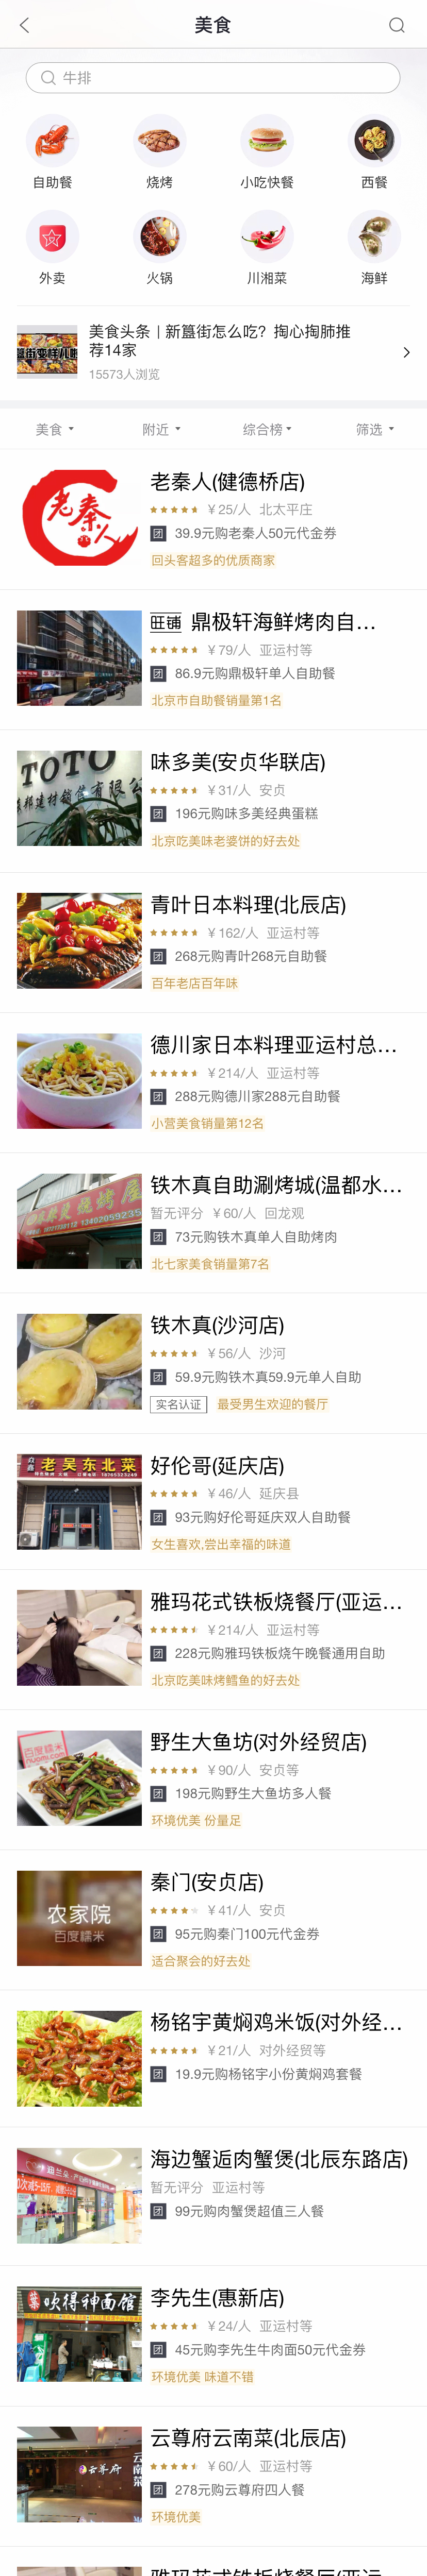 美食推荐app列表页面模板